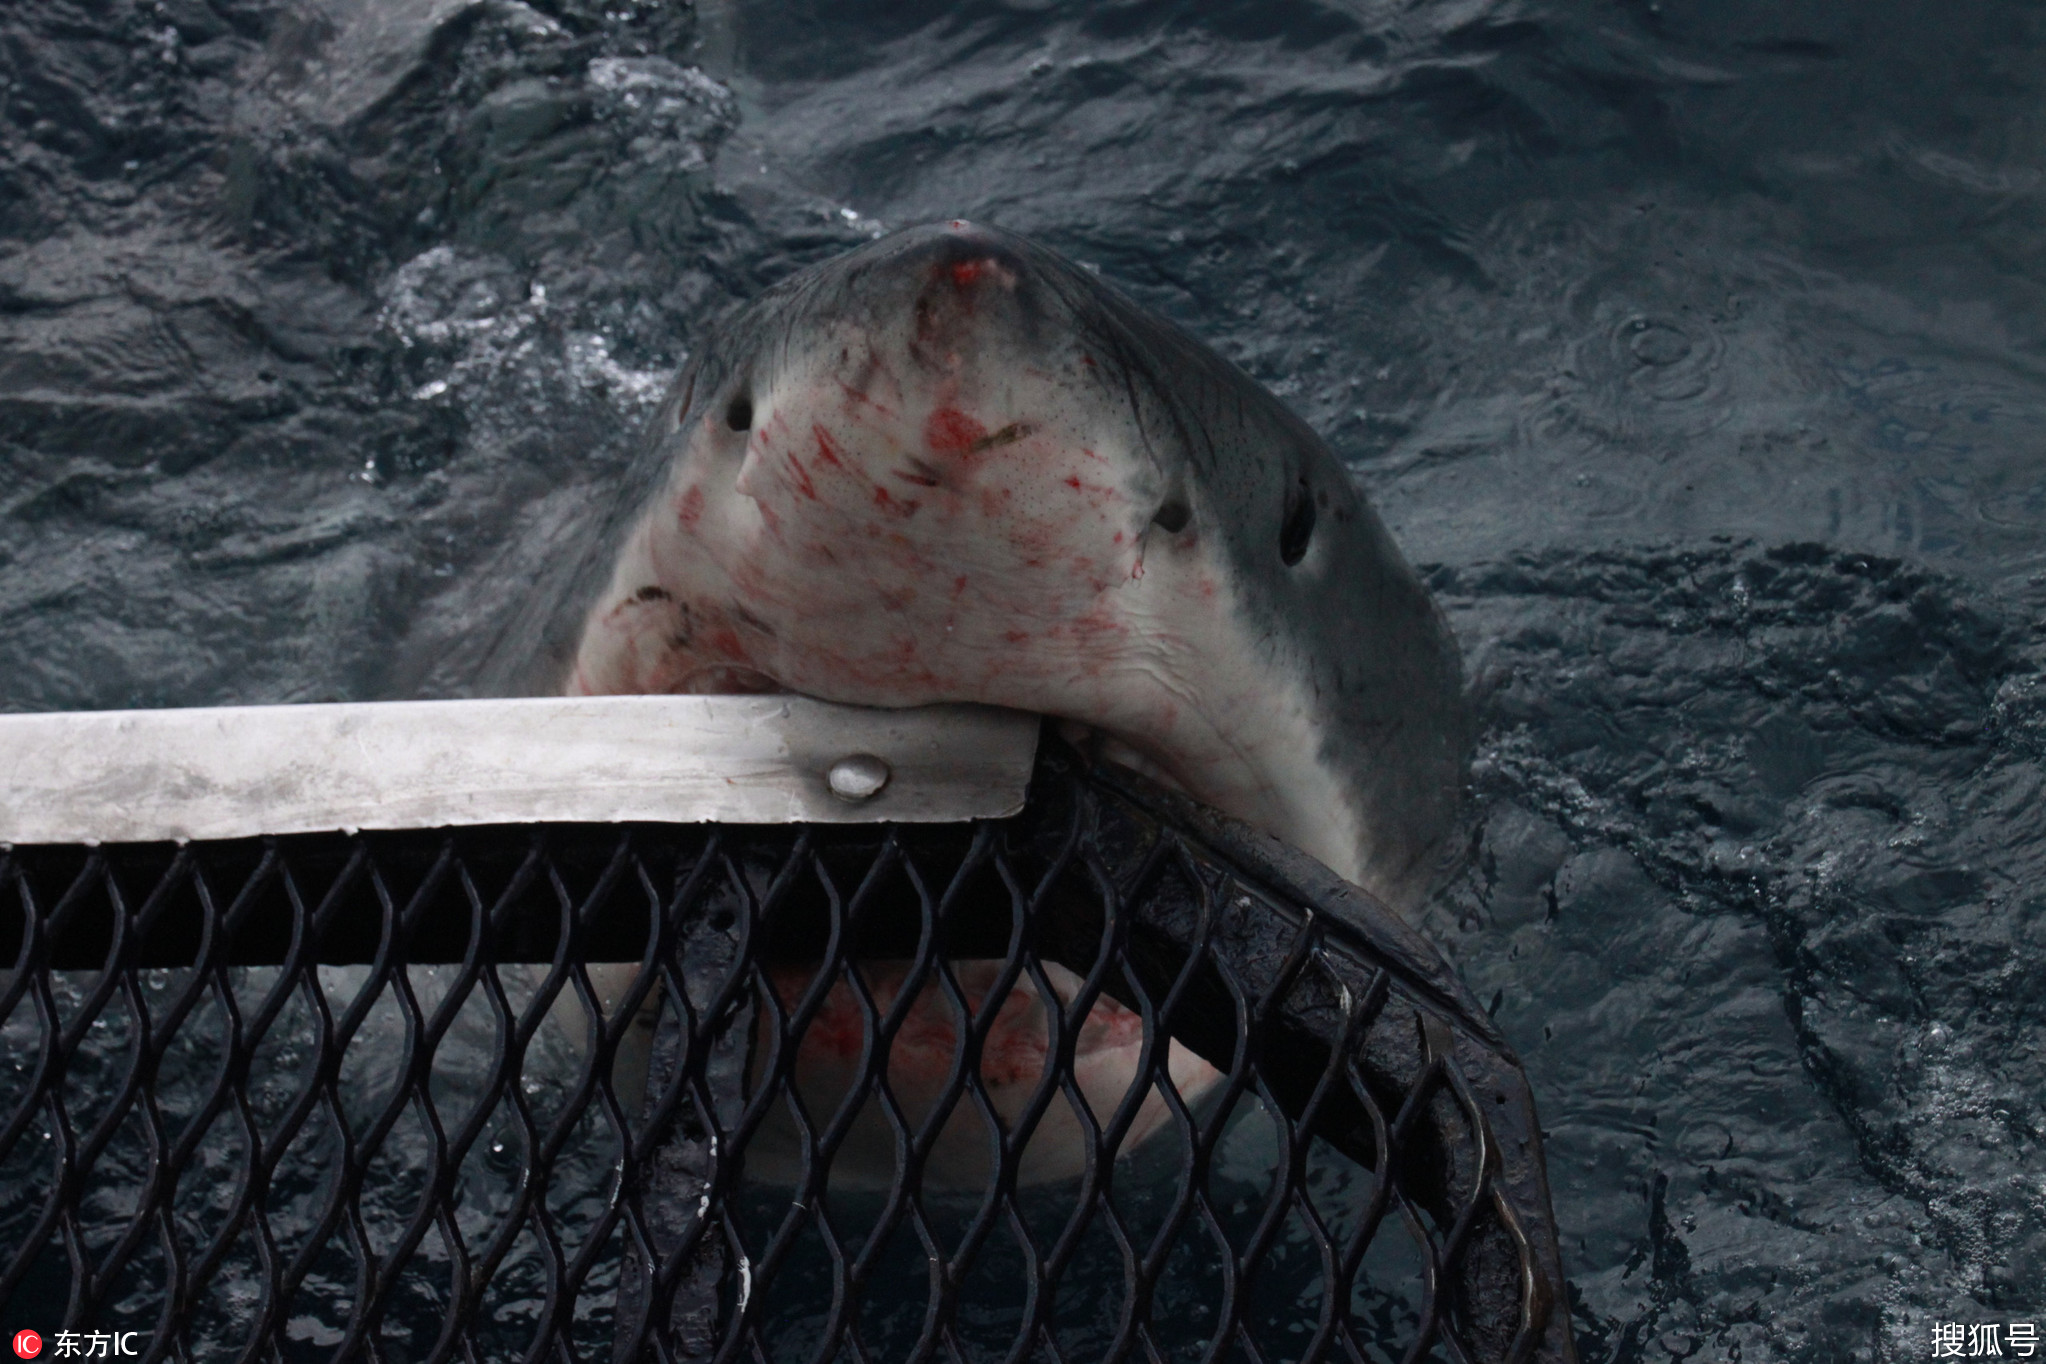 摄影师冒死拍摄大白鲨 双手几乎伸进血口獠牙中!